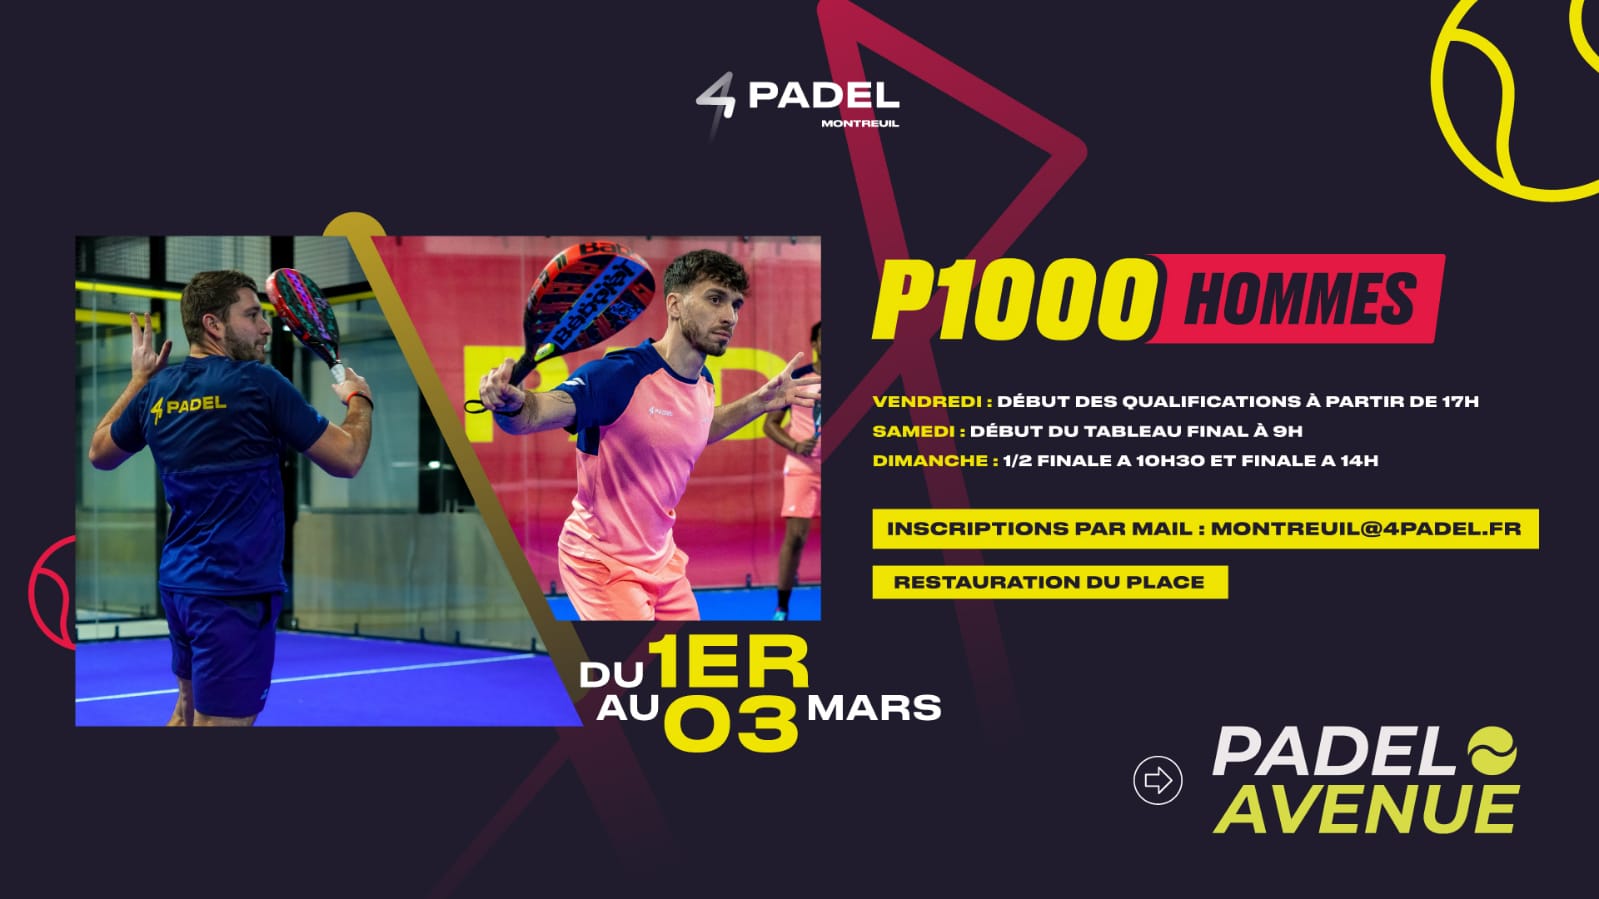 P1000 por Padel Avenue – Descubre la lista de jugadores presentes en 4Padel Montreuil